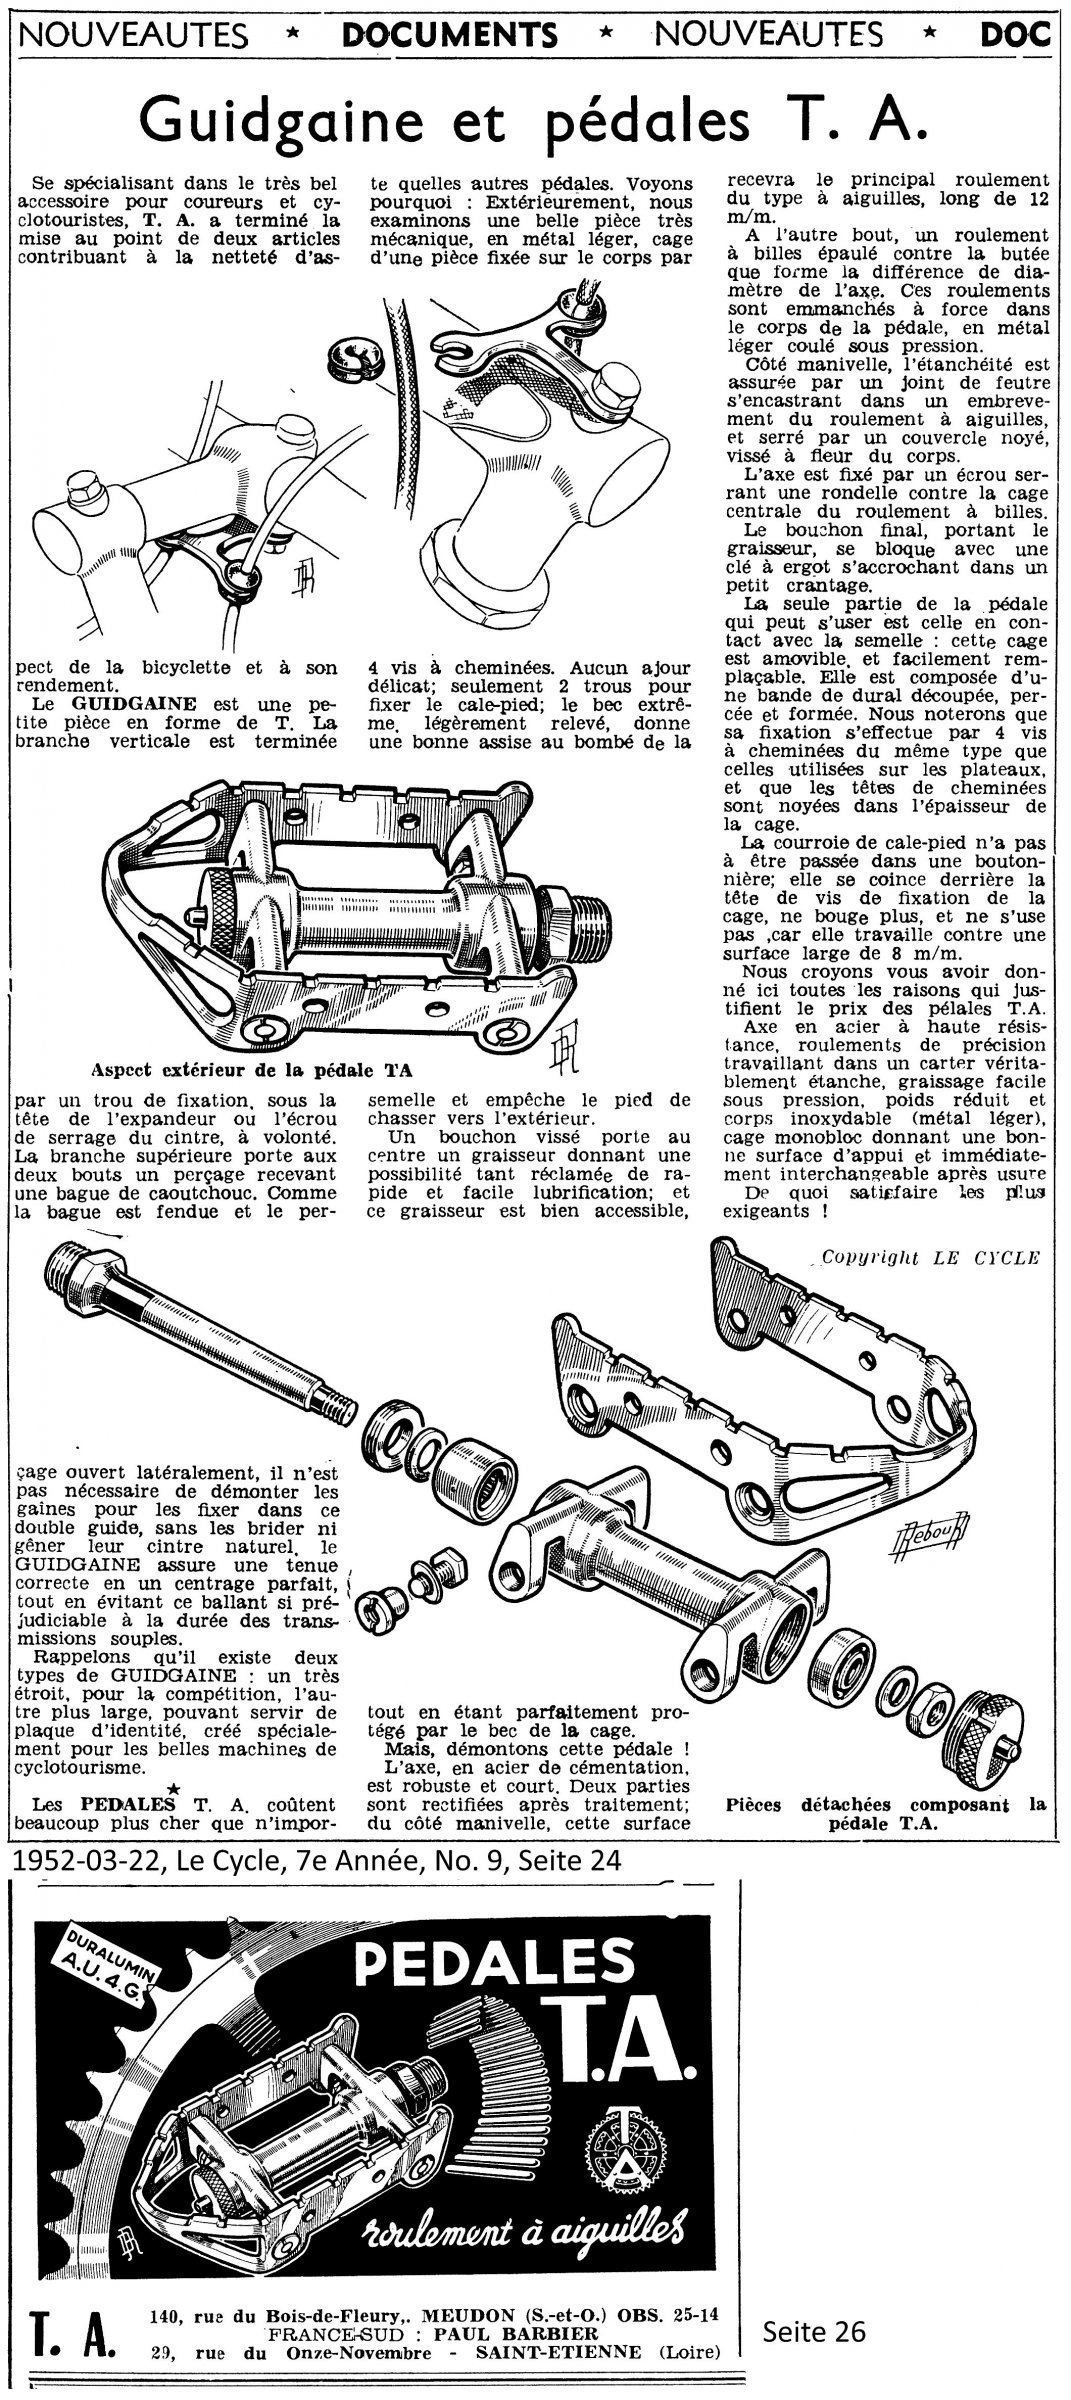 1952-03-22, Le Cycle, 7e Année, No. 9, Seiten 24 und 26, 0,33.jpg